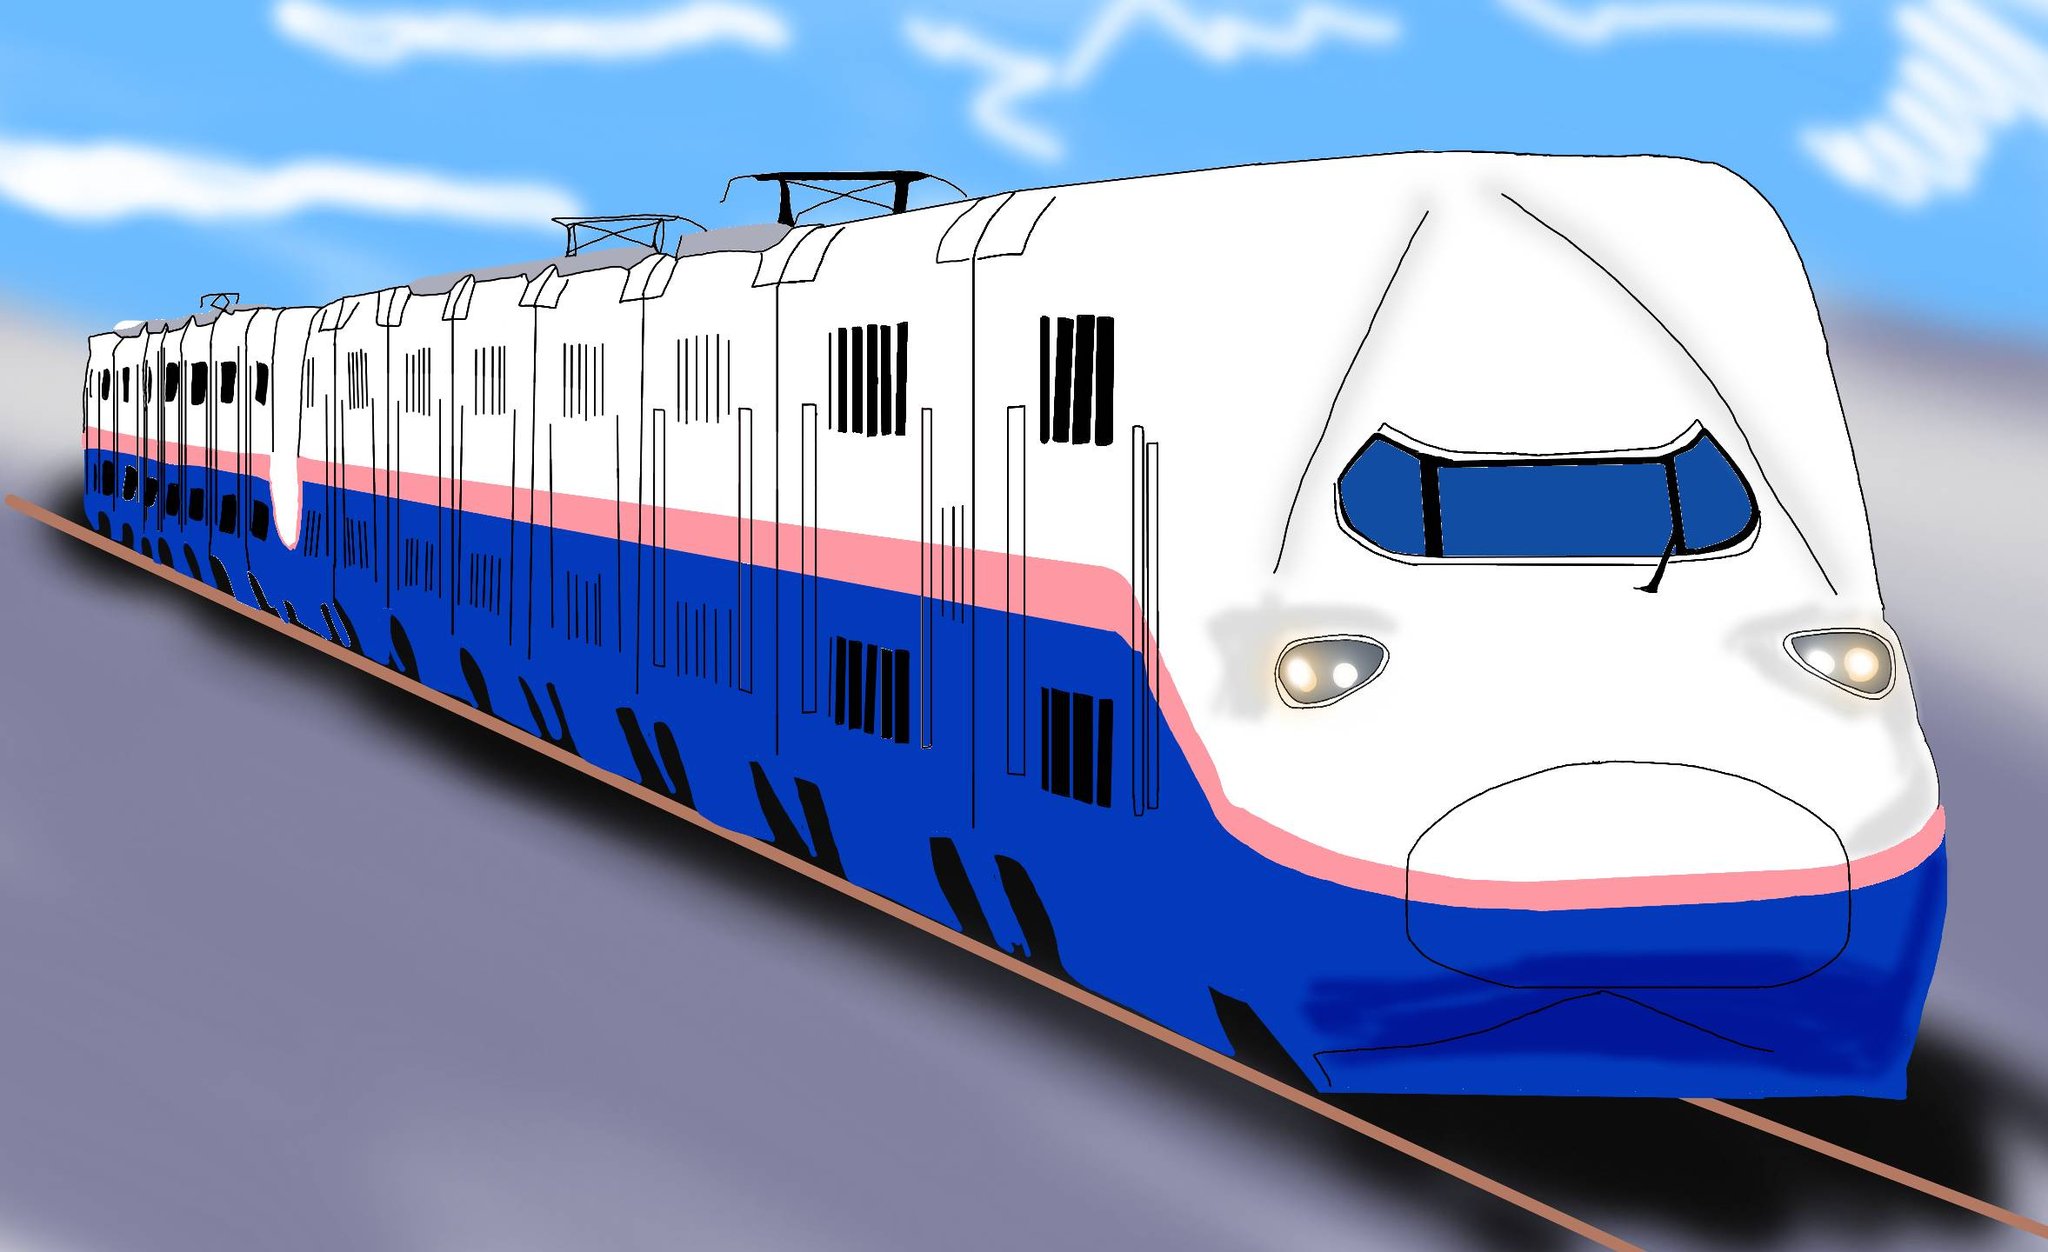 Twitter 上的 モアイ 今年の秋に引退するe4系を描きました Jr東日本 E4系 上越新幹線 新幹線 鉄道イラスト 描き鉄 鉄道 鉄道好きな人と繋がりたい 絵描きさんと繋がりたい デジタルイラスト イラストグラム T Co Qk8ownats8 Twitter